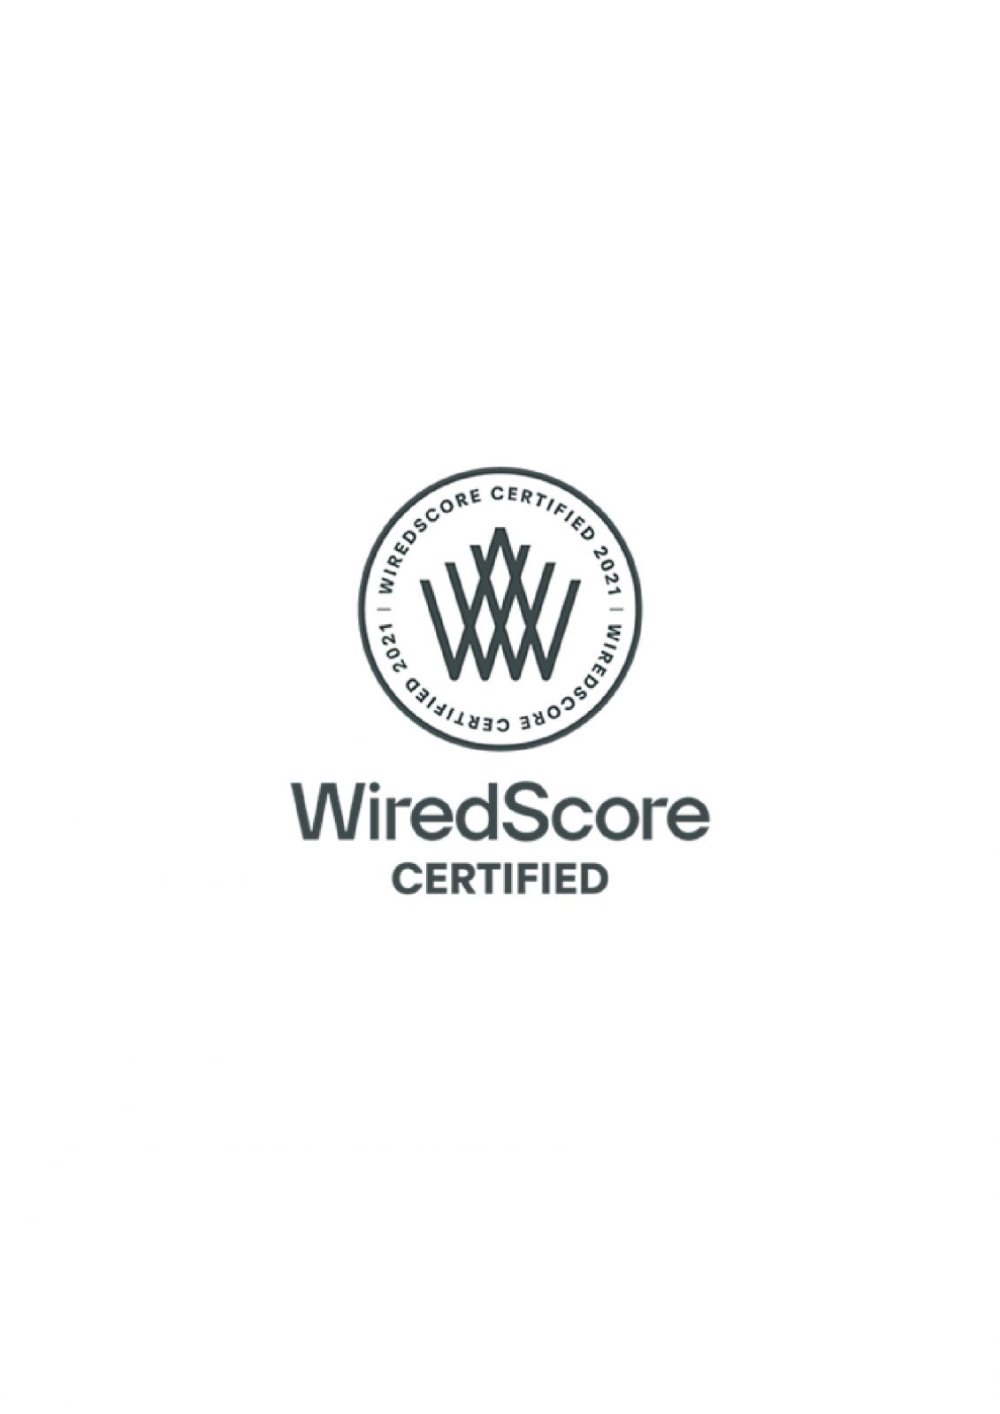 PGI ENGINEERING ja compta amb la certificació WiredScore per als seus clients.